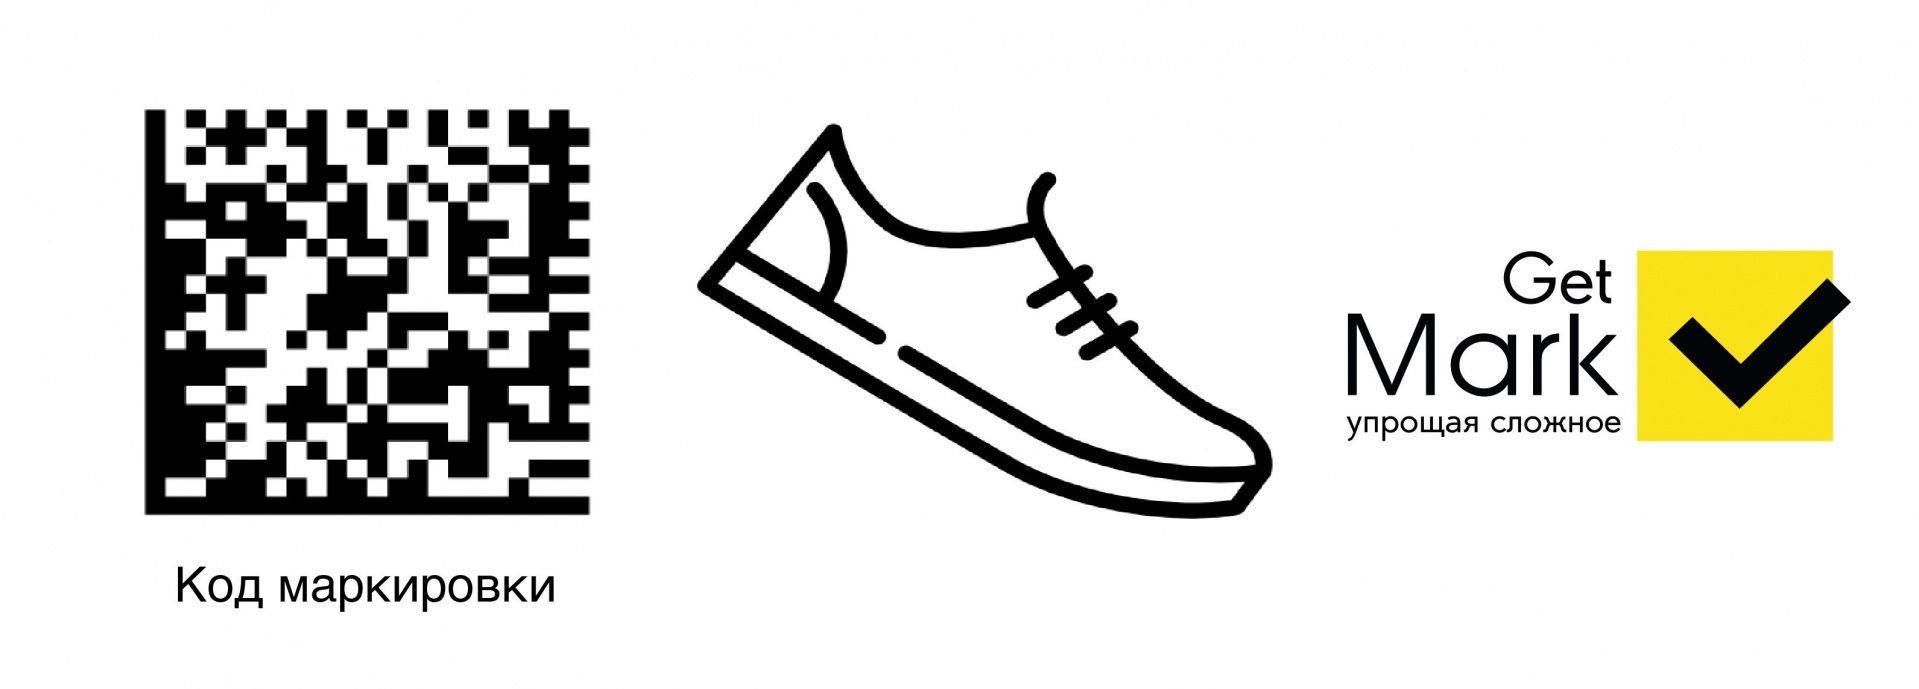 Продление сроков маркировки обуви